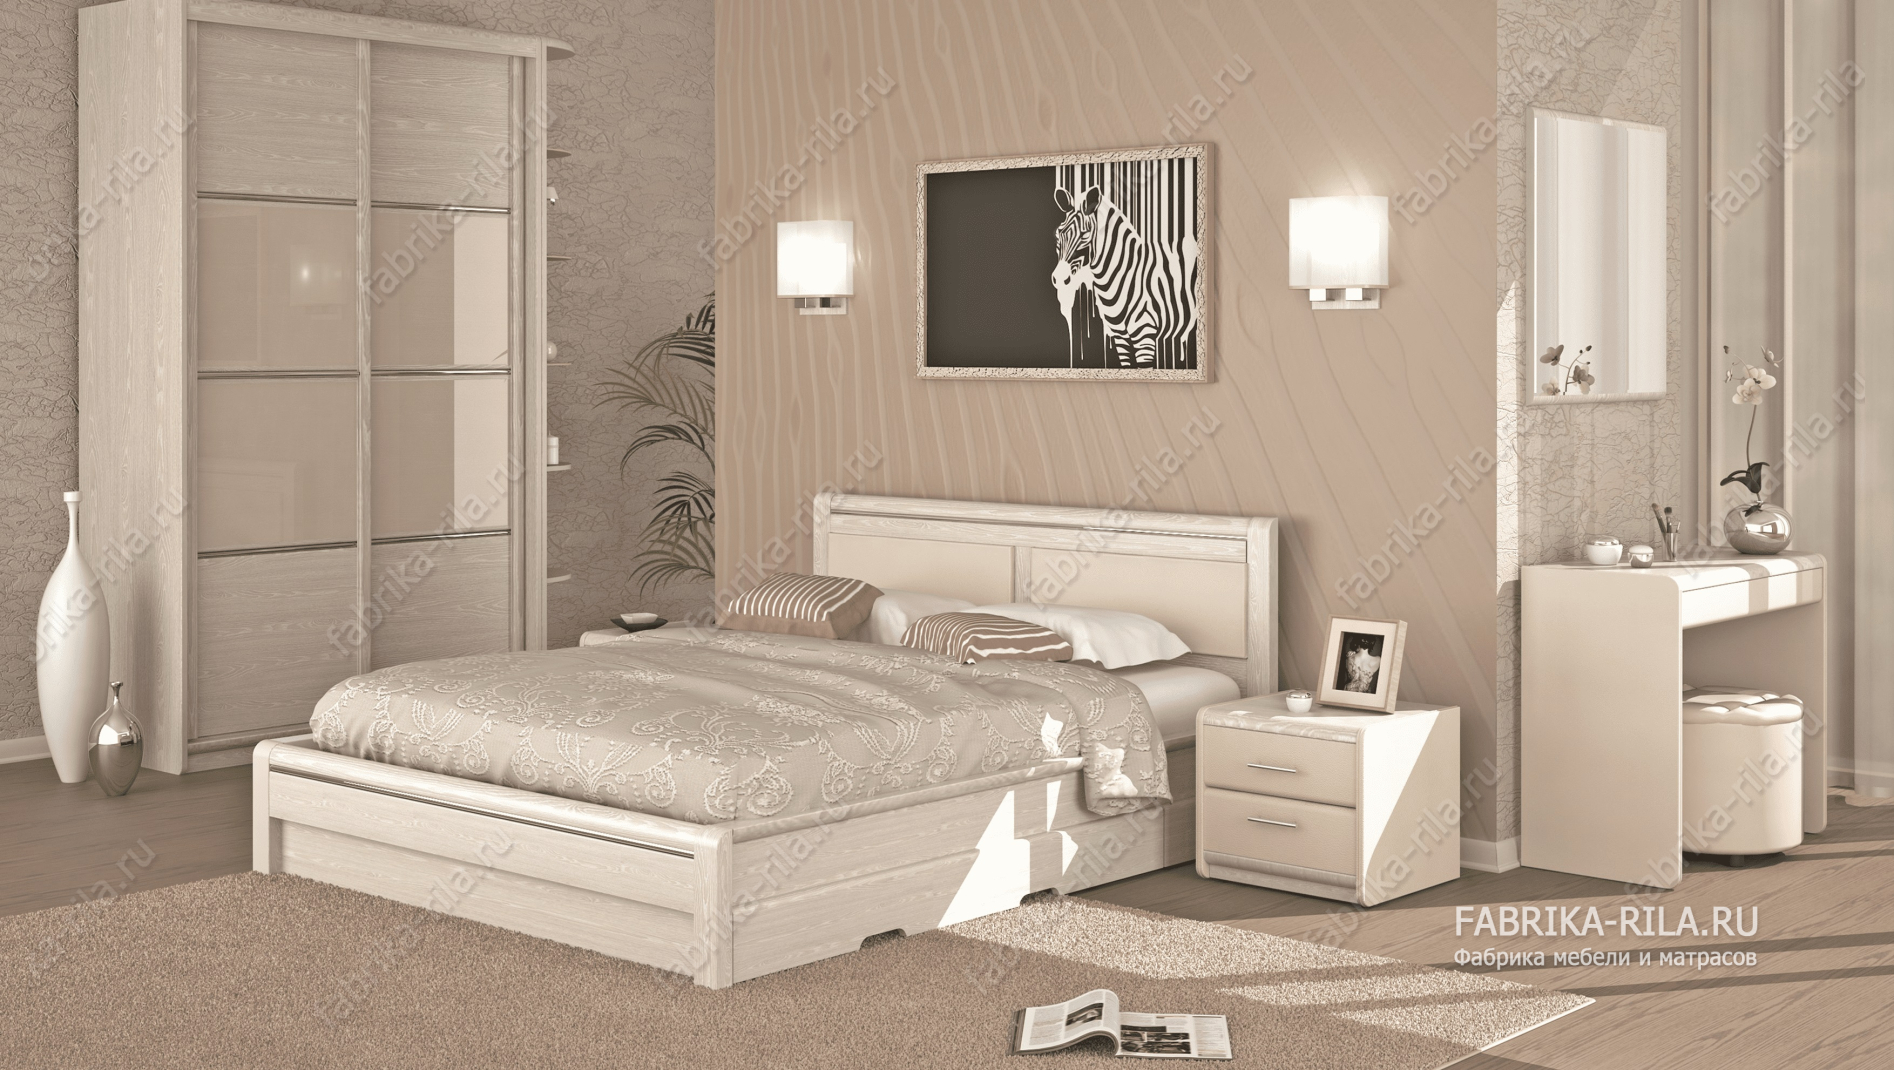 Кровать Okaeri 5 — 120x190 см. из сосны